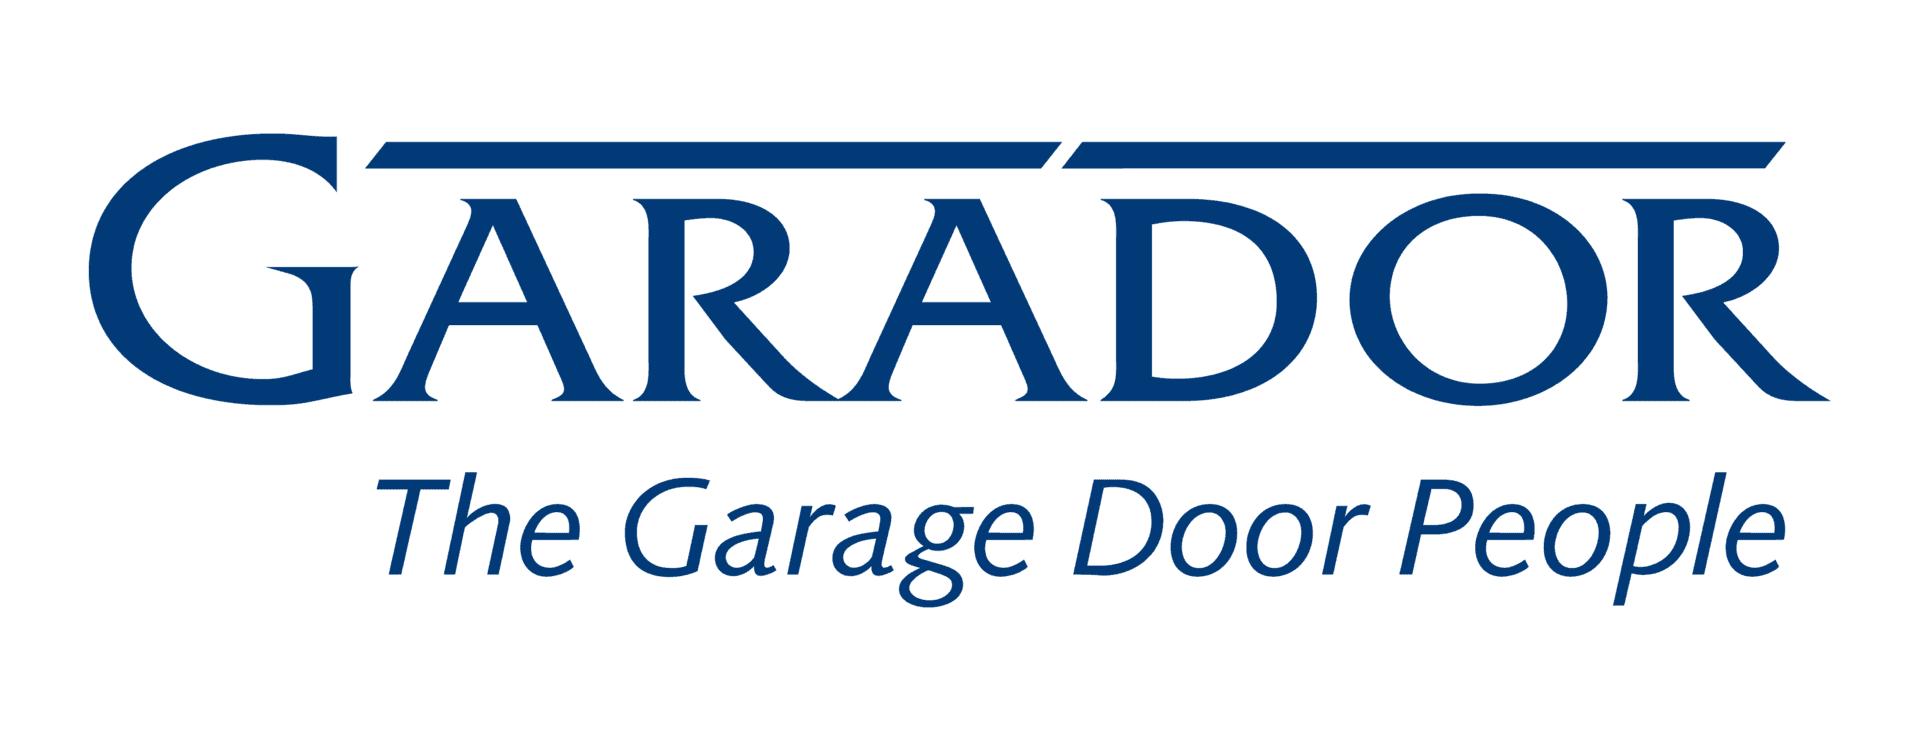 Garador logo, the garage door people